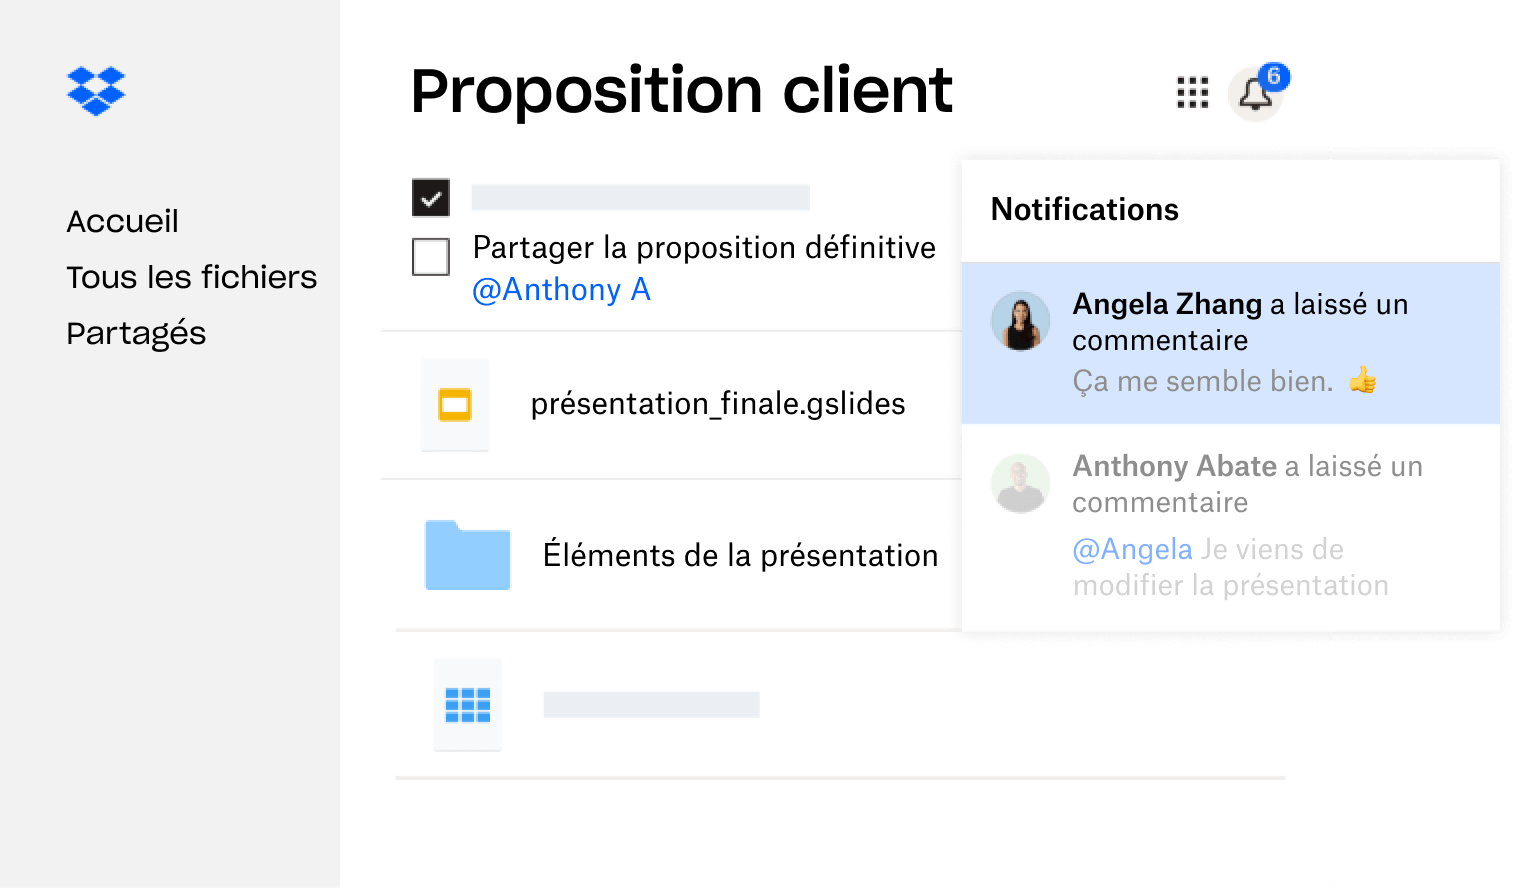 Une proposition client créée dans Dropbox est partagée avec plusieurs utilisateurs qui ont laissé des commentaires.